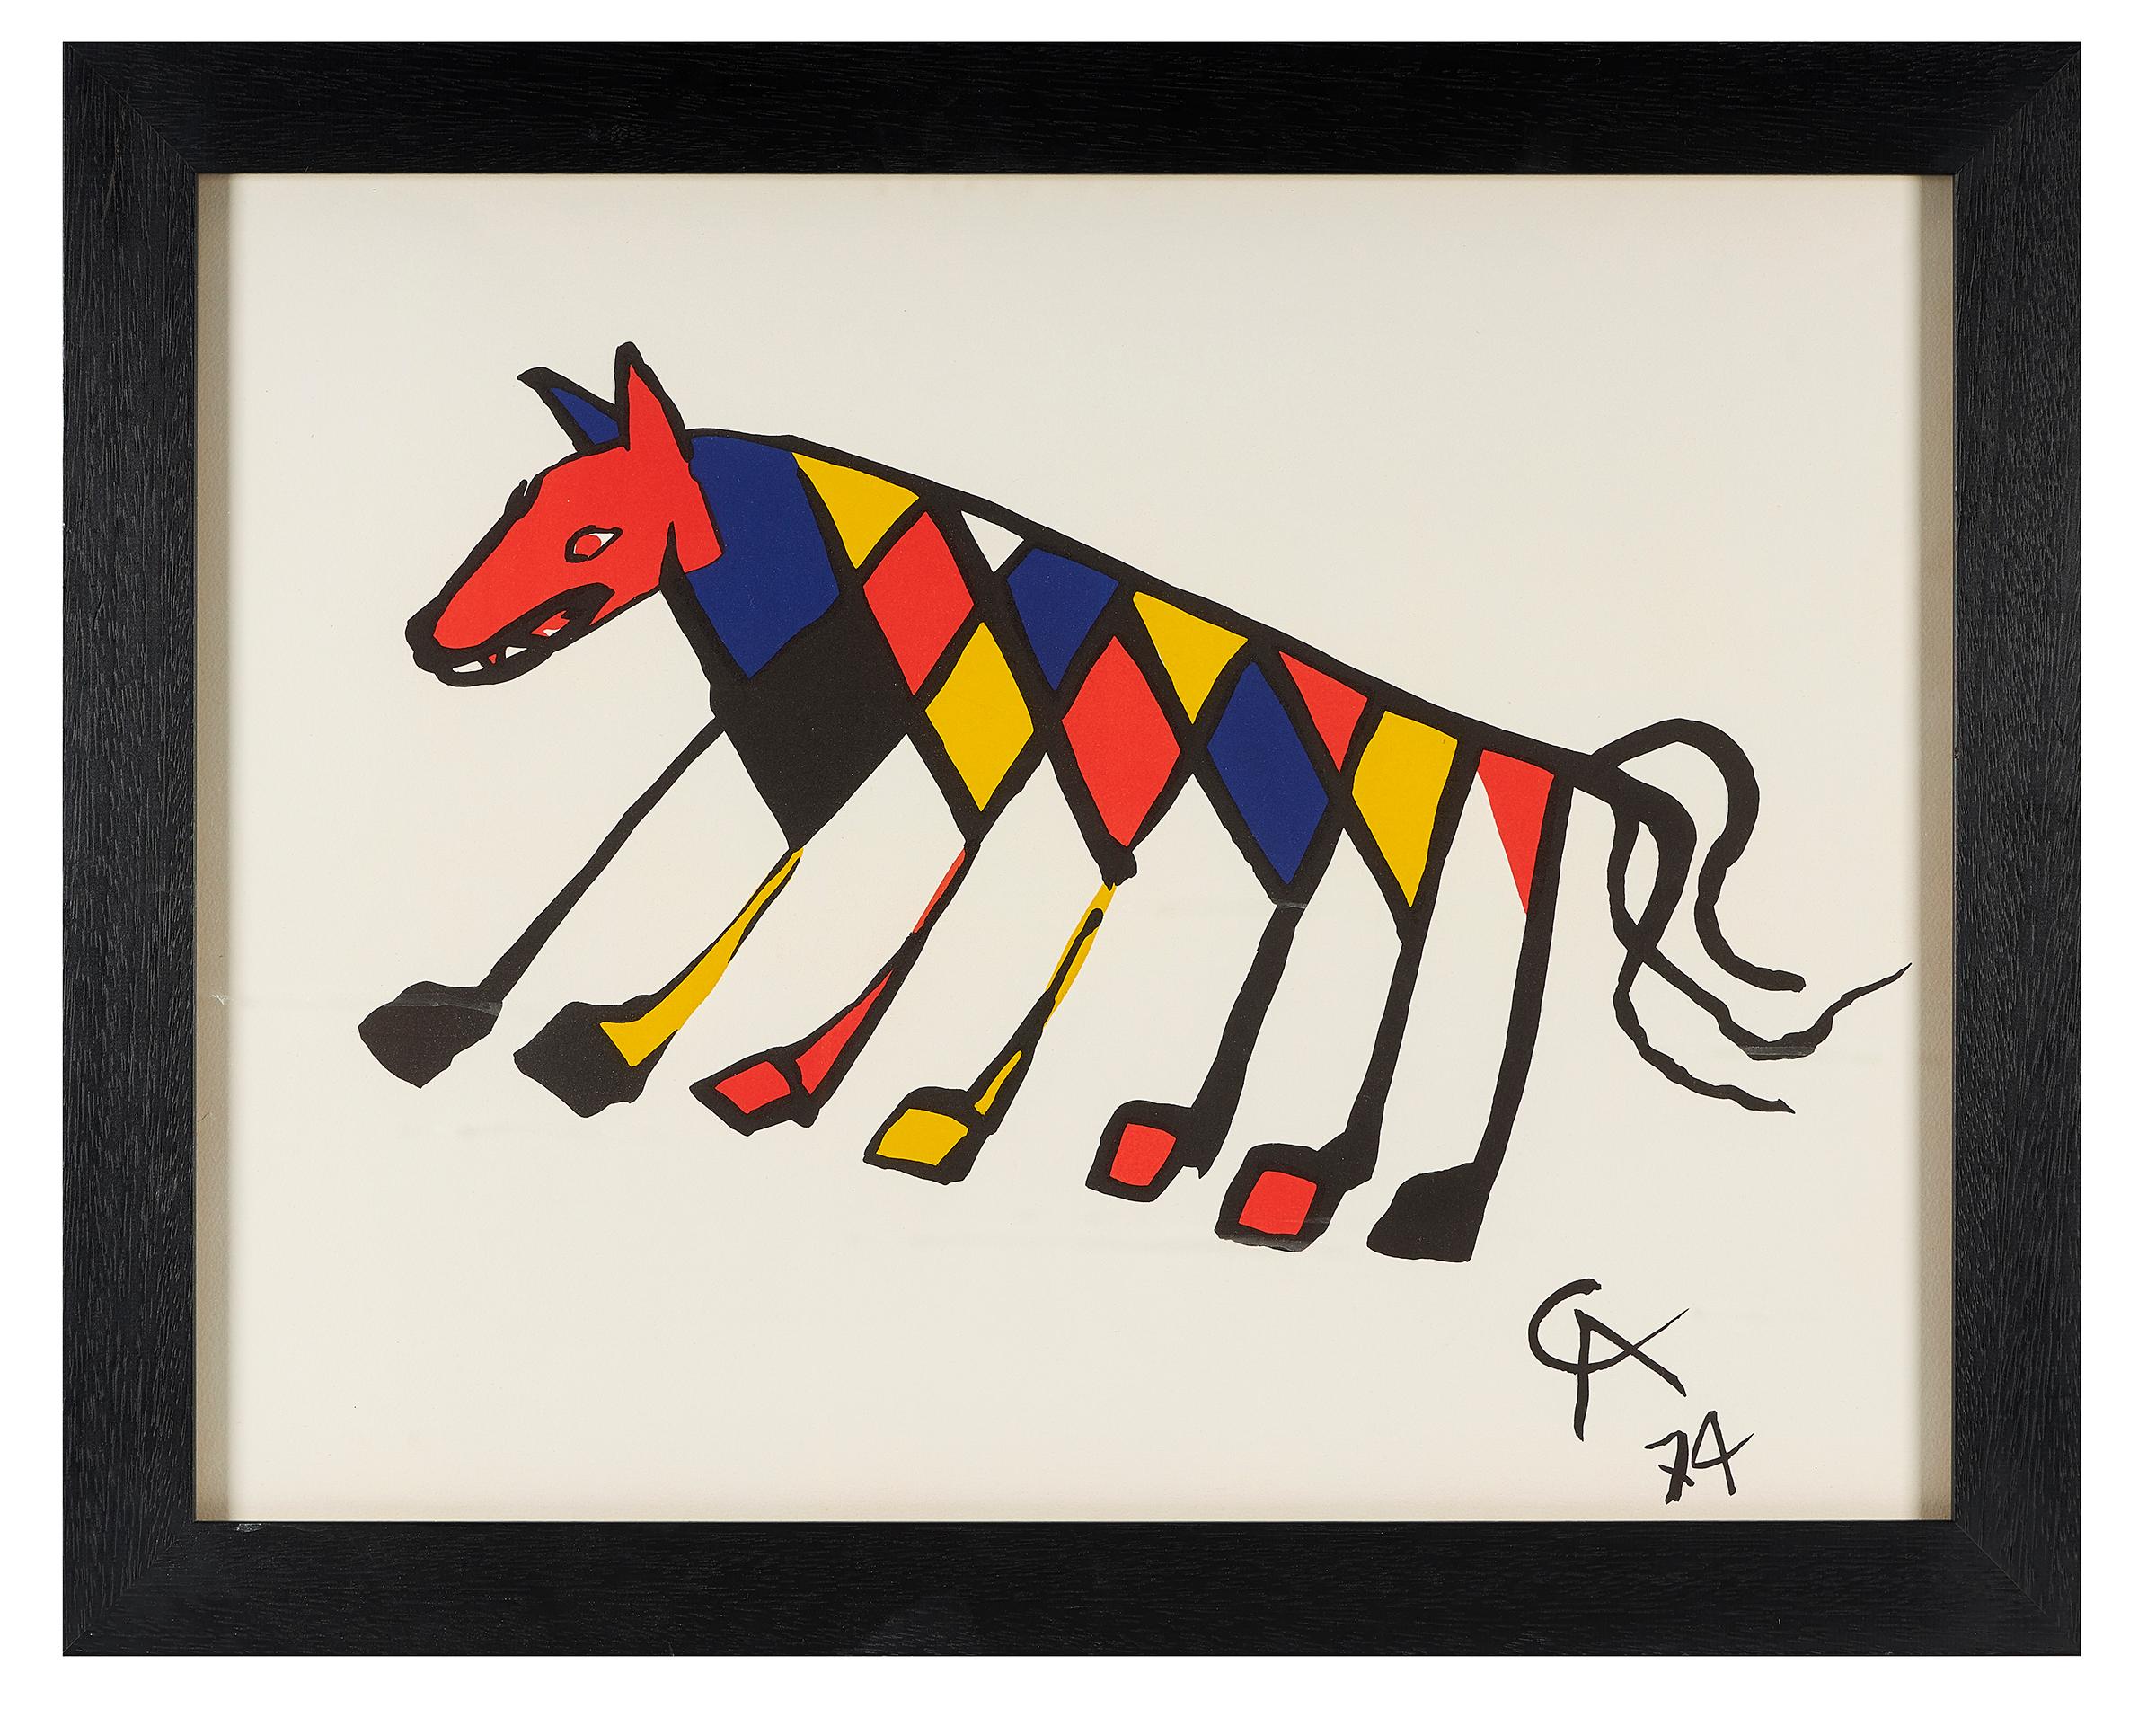 Alexander Calder (Américain, 1898-1976), 'Beastie' de 'Flying Colors', lithographie imprimée en couleurs, 1974, chacune sur papier vélin avec marges complètes imprimées jusqu'au bord, encadrée.